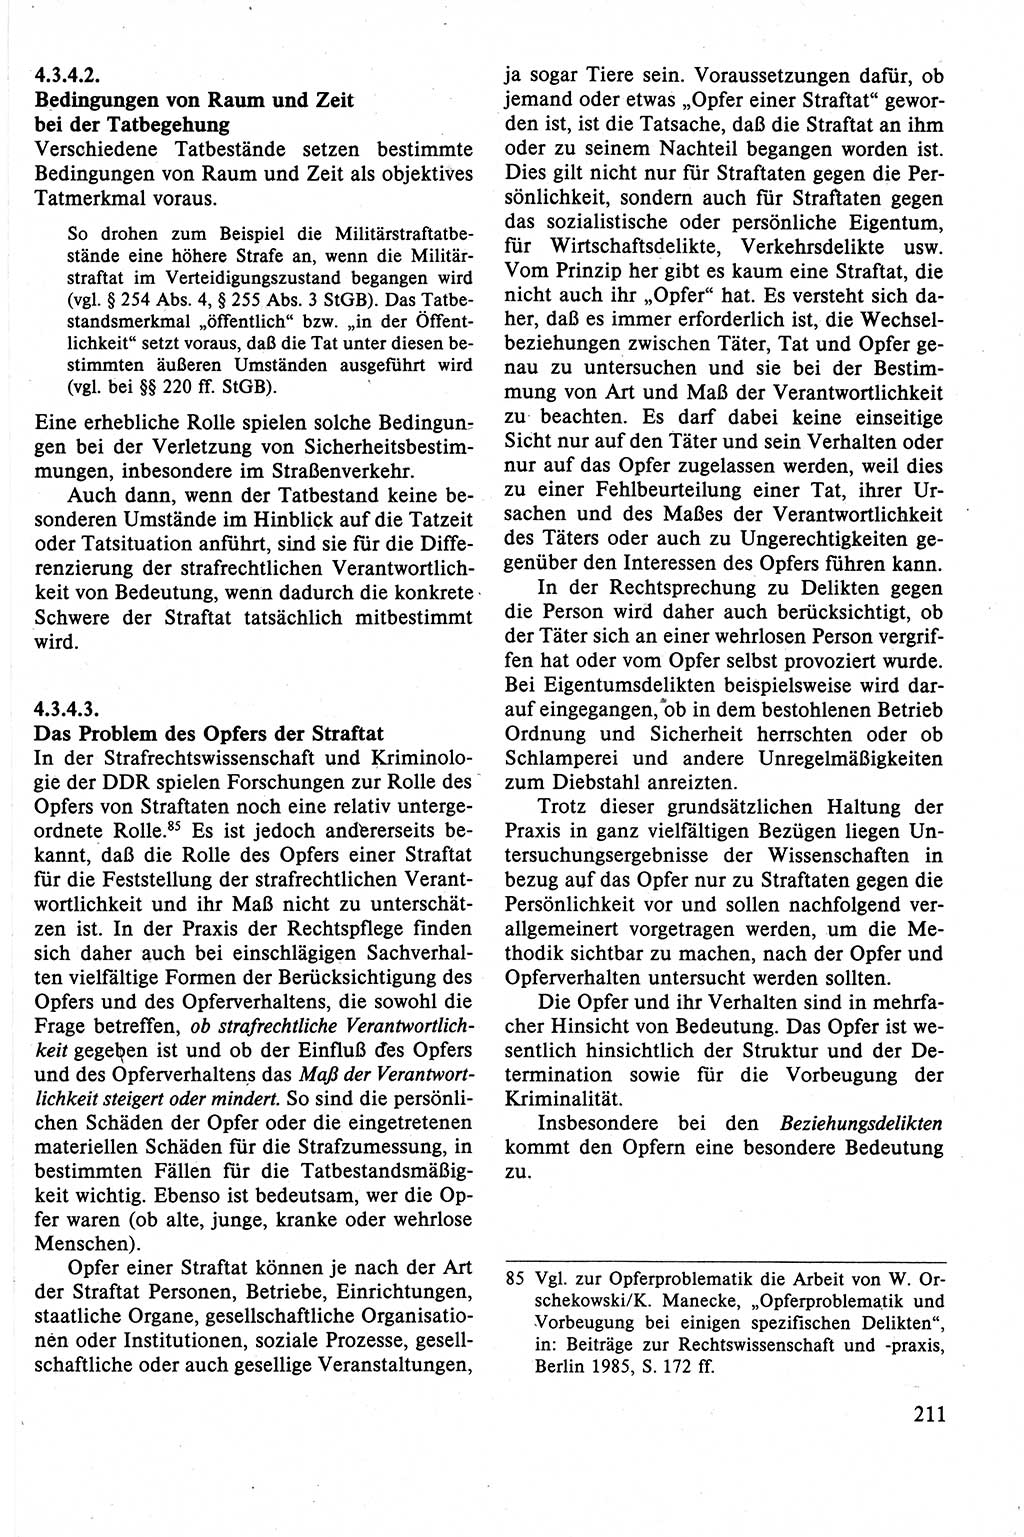 Strafrecht der DDR (Deutsche Demokratische Republik), Lehrbuch 1988, Seite 211 (Strafr. DDR Lb. 1988, S. 211)